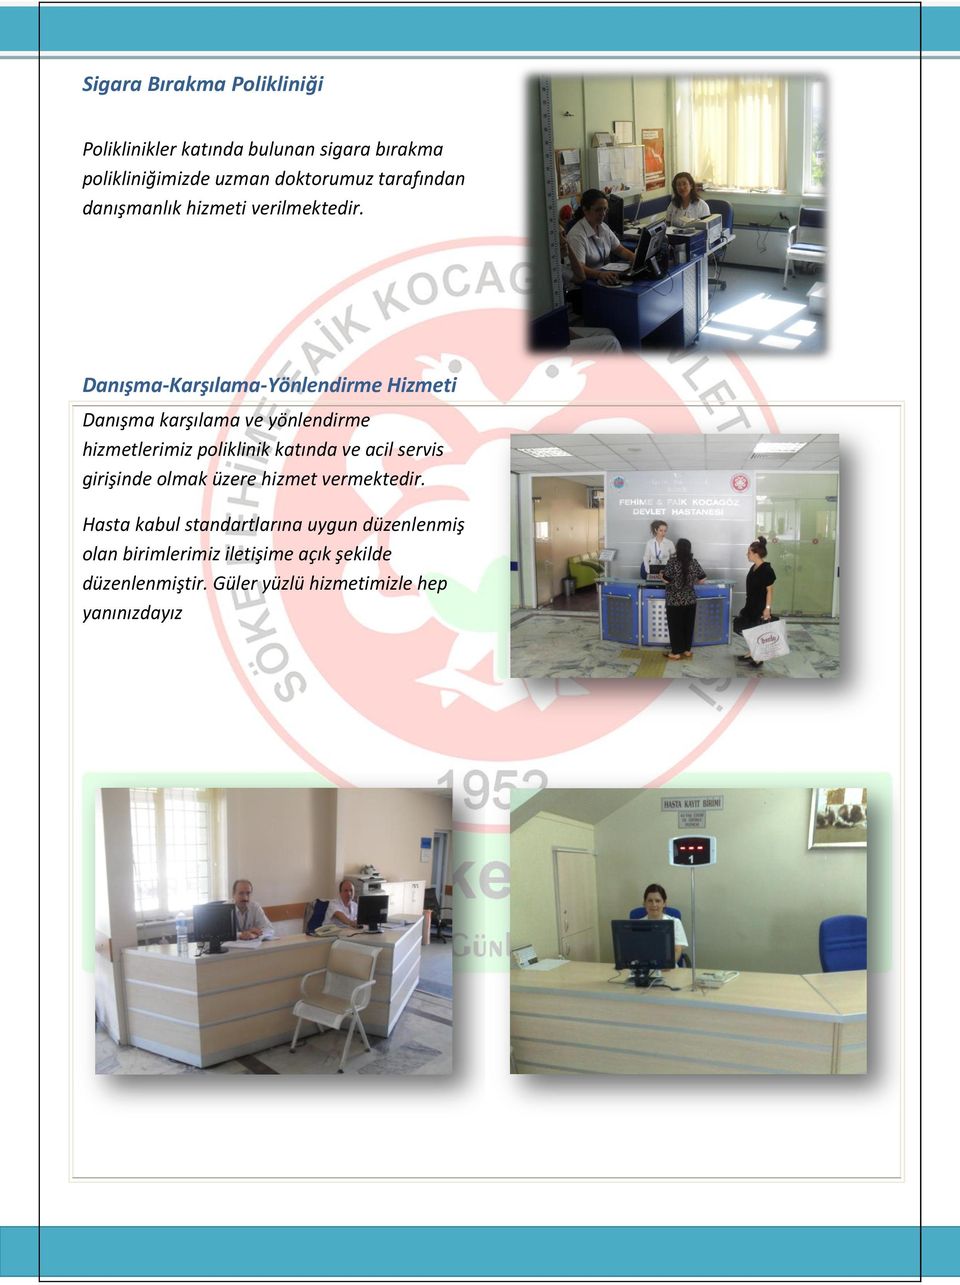 Danışma-Karşılama-Yönlendirme Hizmeti Danışma karşılama ve yönlendirme hizmetlerimiz poliklinik katında ve acil